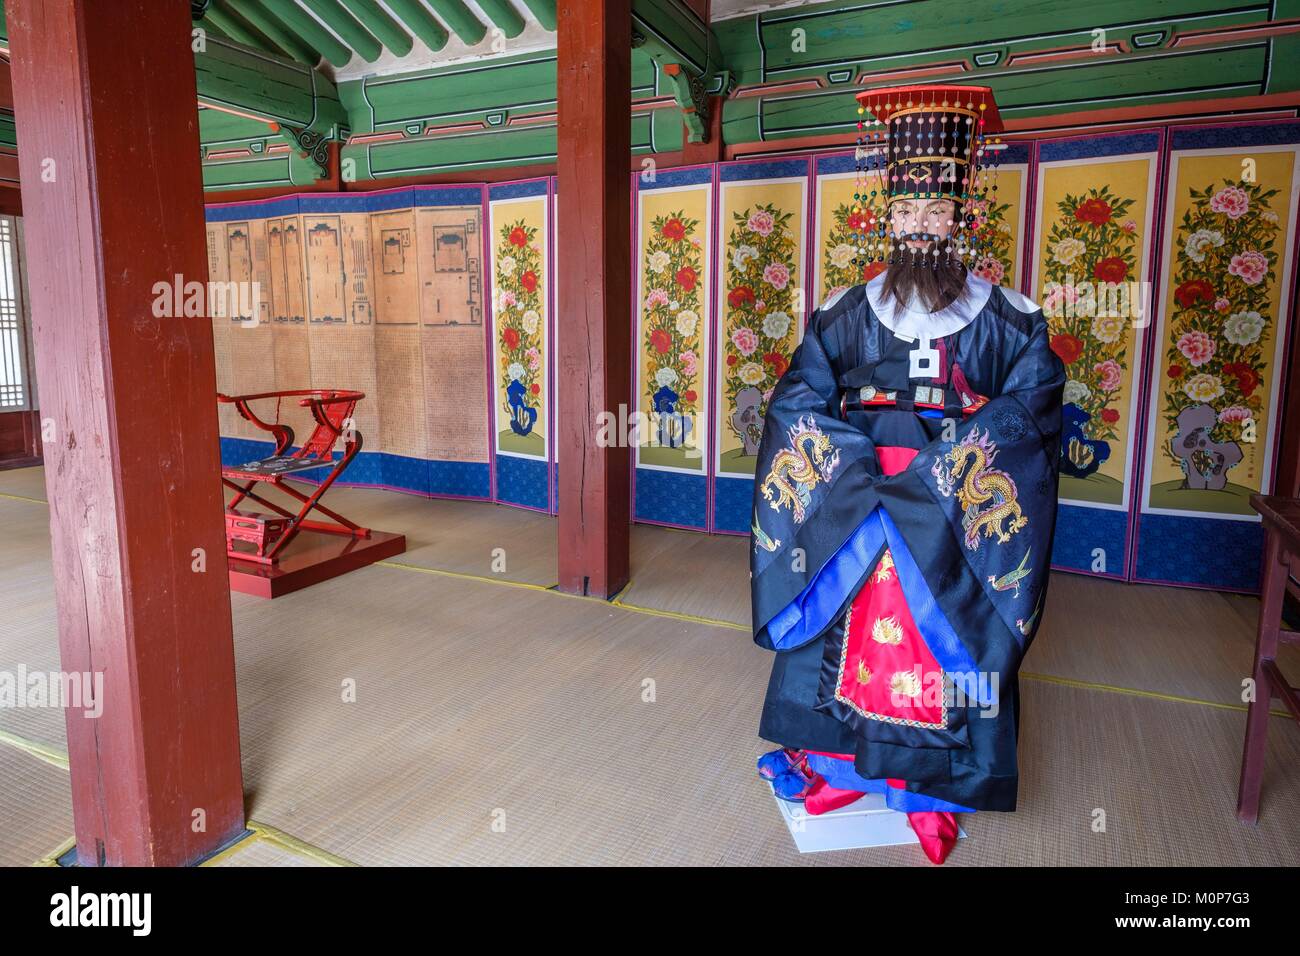 La Corée du Sud, Séoul, Jongno-gu district,Temple Jongmyo est un sanctuaire dédié à Confucius les rois et reines de la Dynastie Joseon et site du patrimoine mondial de l'UNESCO Banque D'Images